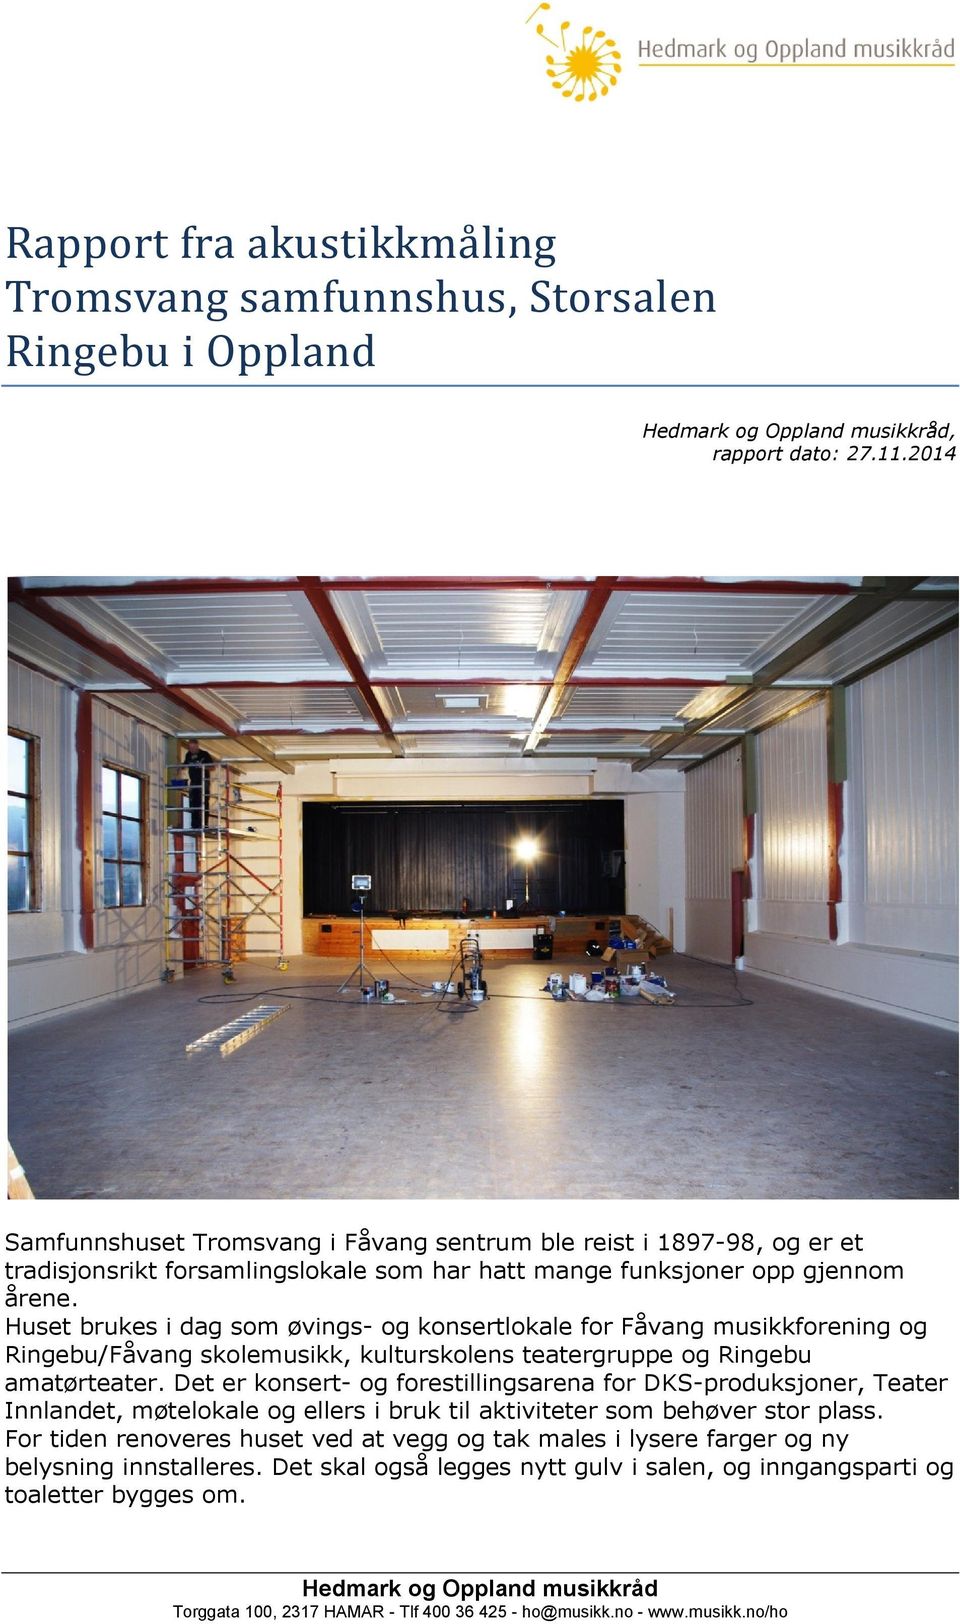 Huset brukes i dag som øvings- og konsertlokale for Fåvang musikkforening og Ringebu/Fåvang skolemusikk, kulturskolens teatergruppe og Ringebu amatørteater.